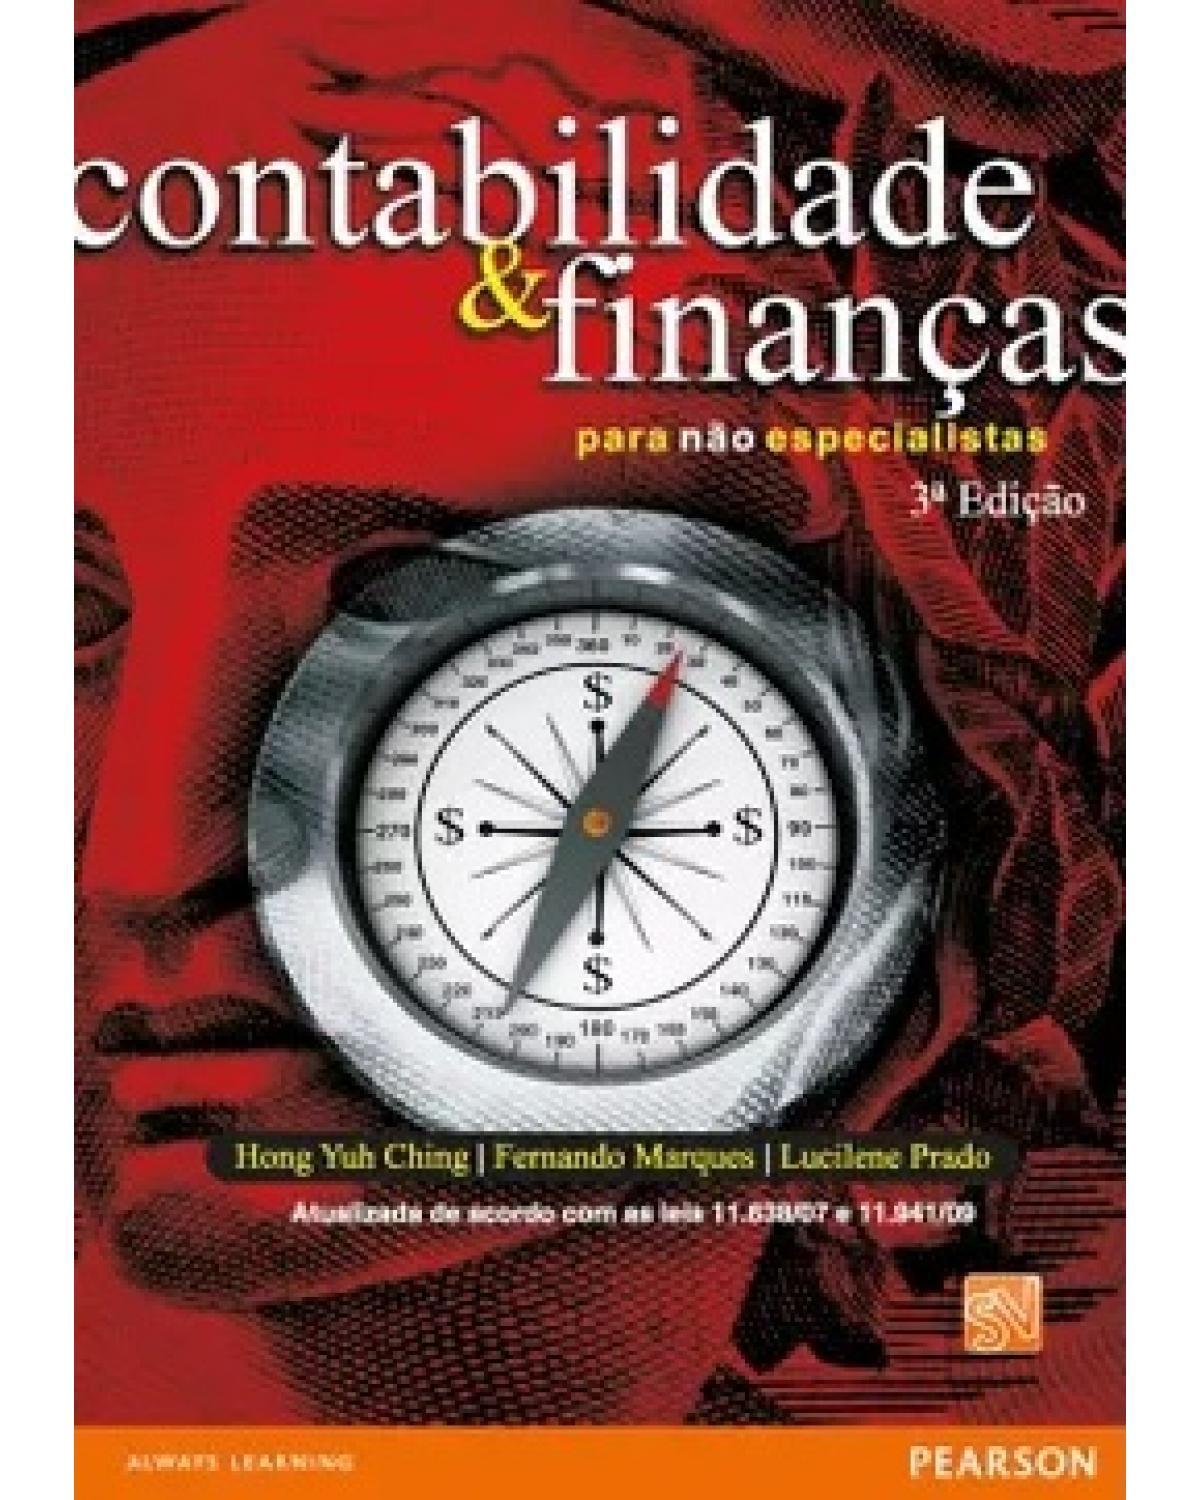 Contabilidade e finanças para não especialistas - 3ª Edição | 2010